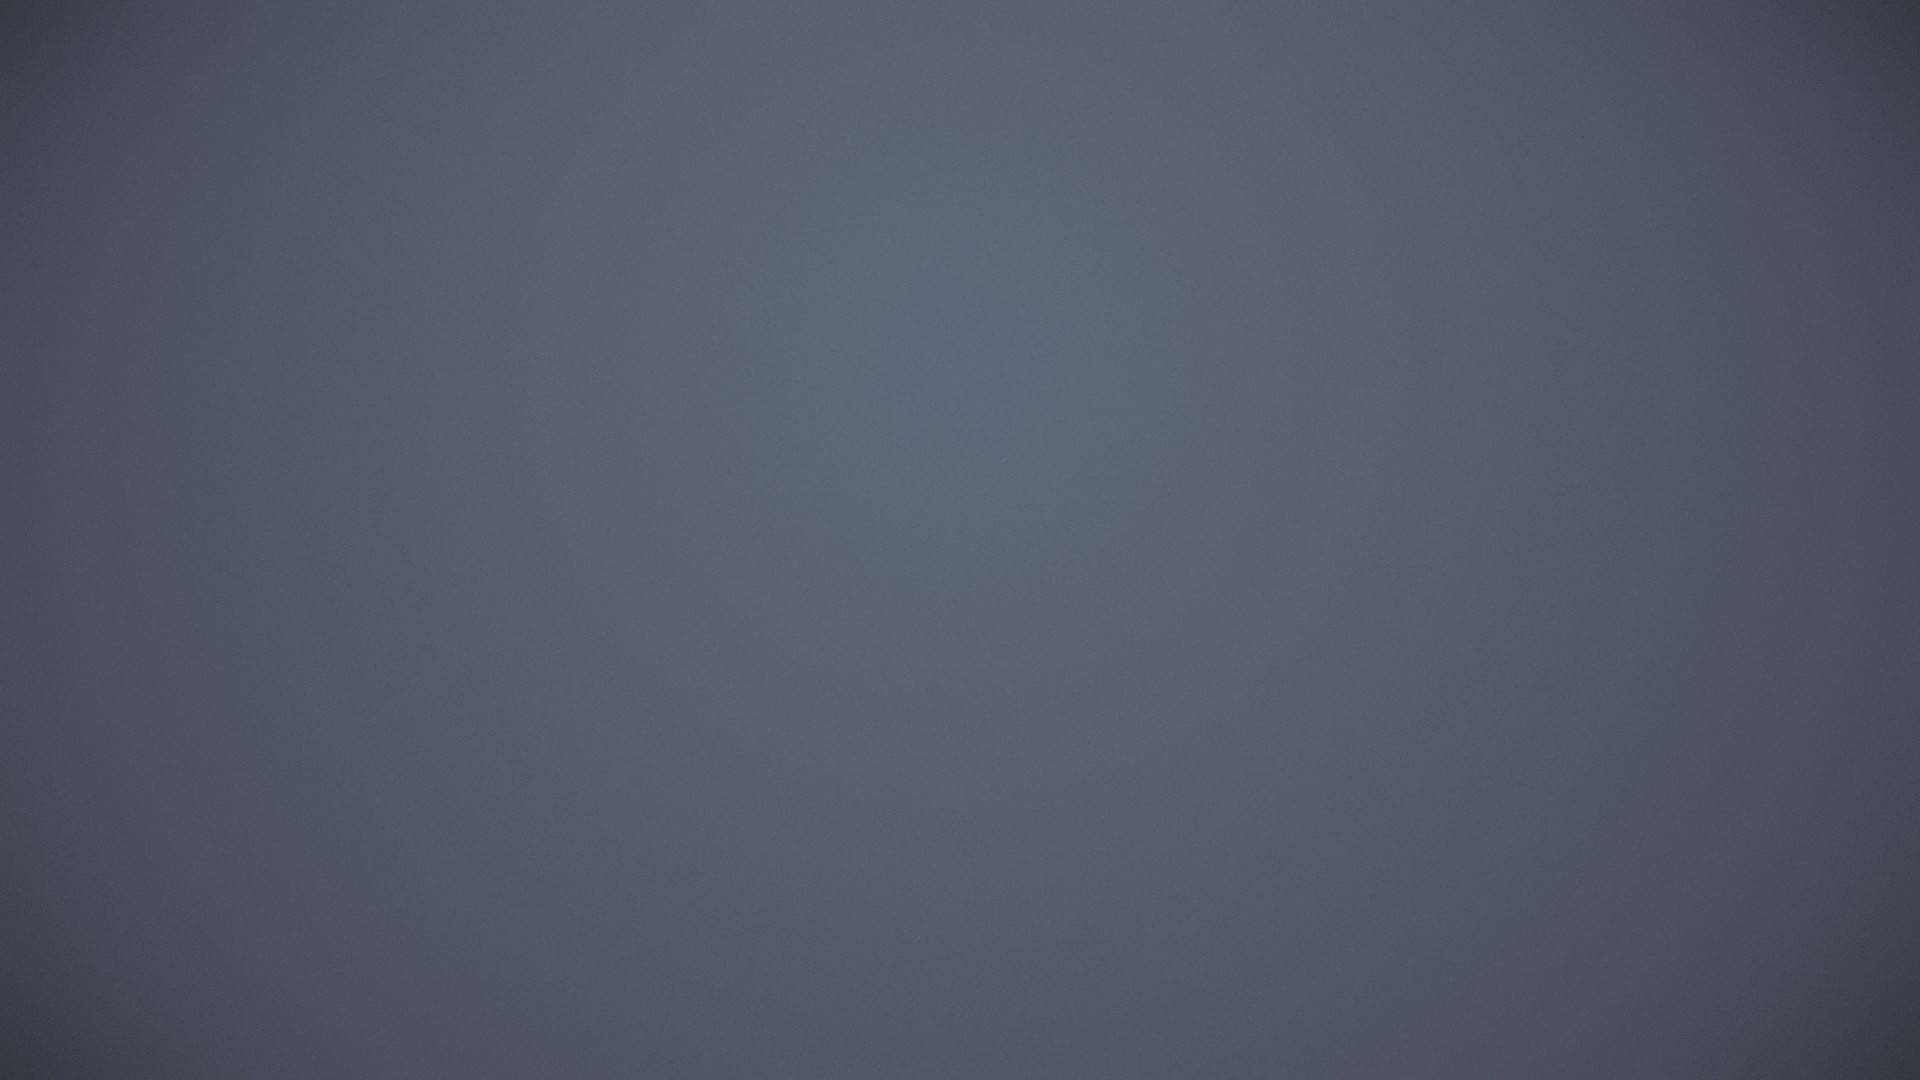 Bluish Solid Grey Background Wallpaper